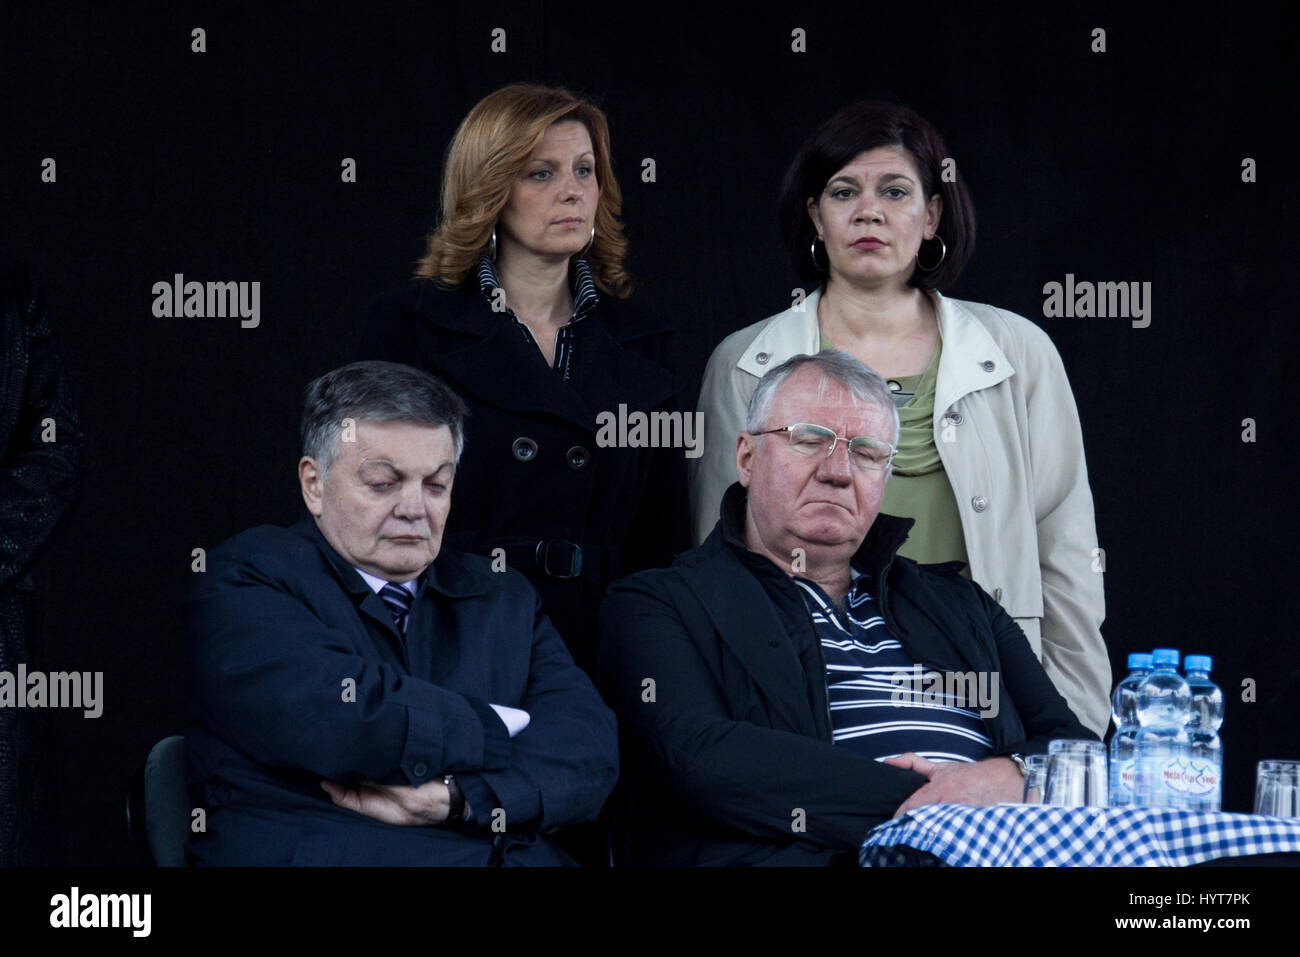 Vrsac, serbia - 10 aprile 2016: Vojislav Seselj, leader dei serbi partito radiale (SRS) dormire durante una delle sue sale riunioni, accanto a uno dei suoi assoc Foto Stock